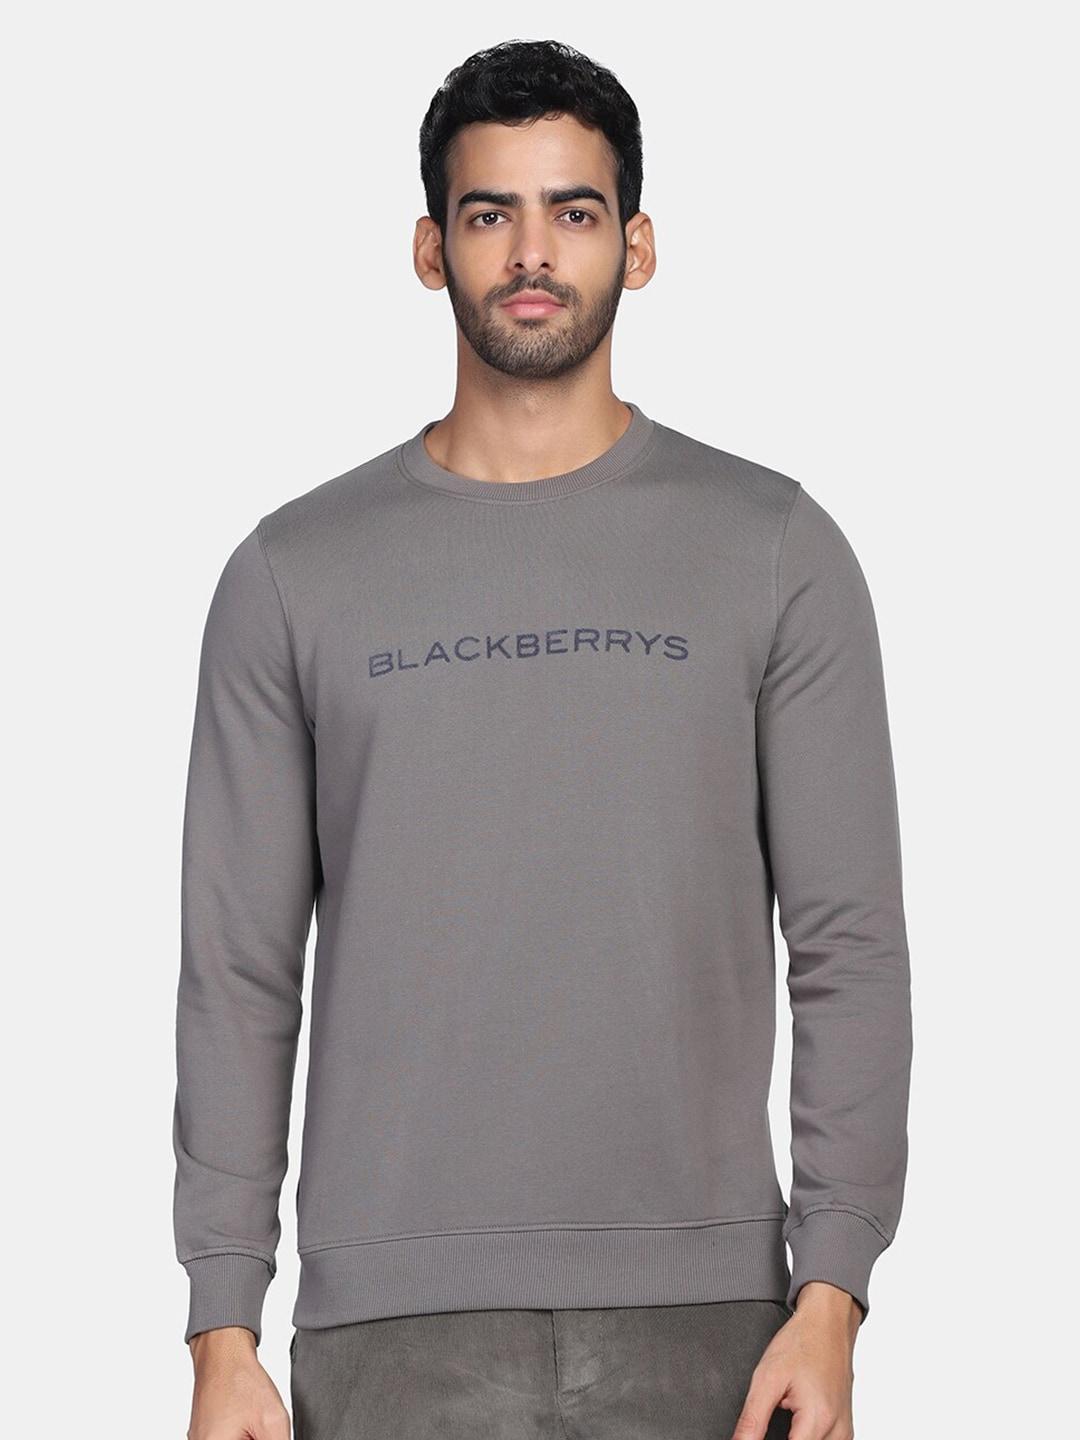 blackberrys men grey printed sweatshirt